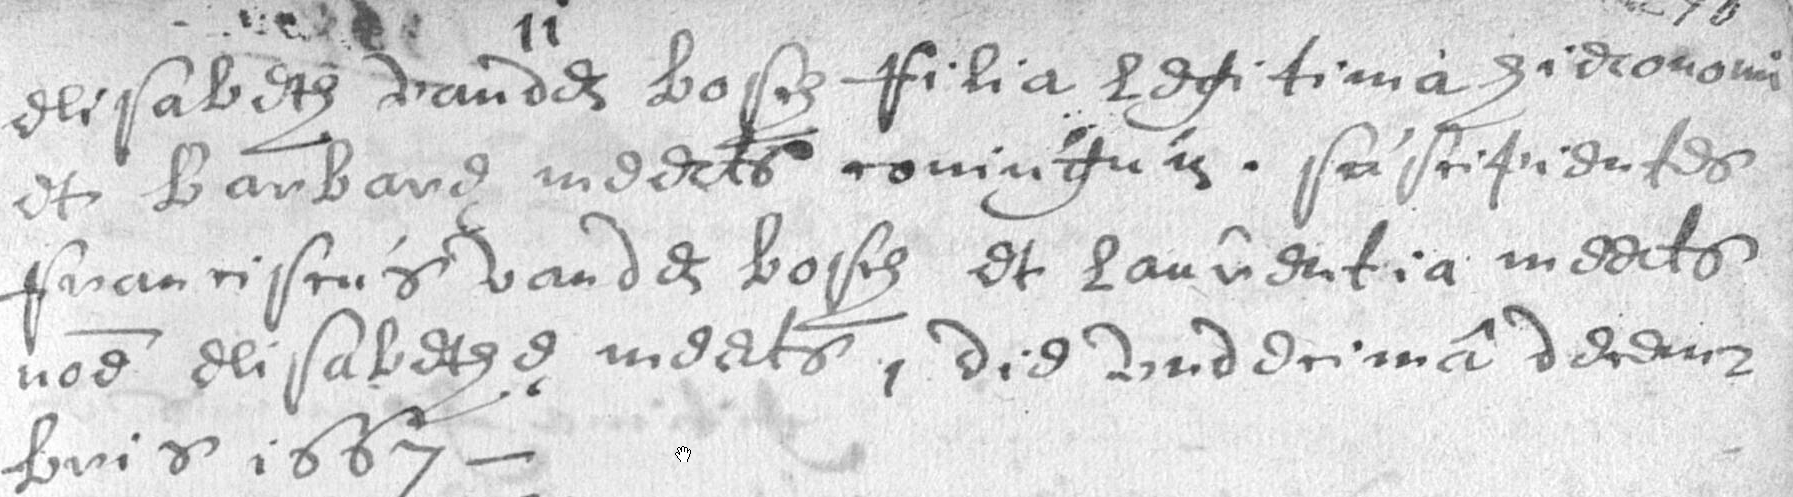 1667-ElisabethVandenBosch11Dec1667HieronimusVandenboschBarbaraMeertsGetuigeLaurentiaMeerts.jpg